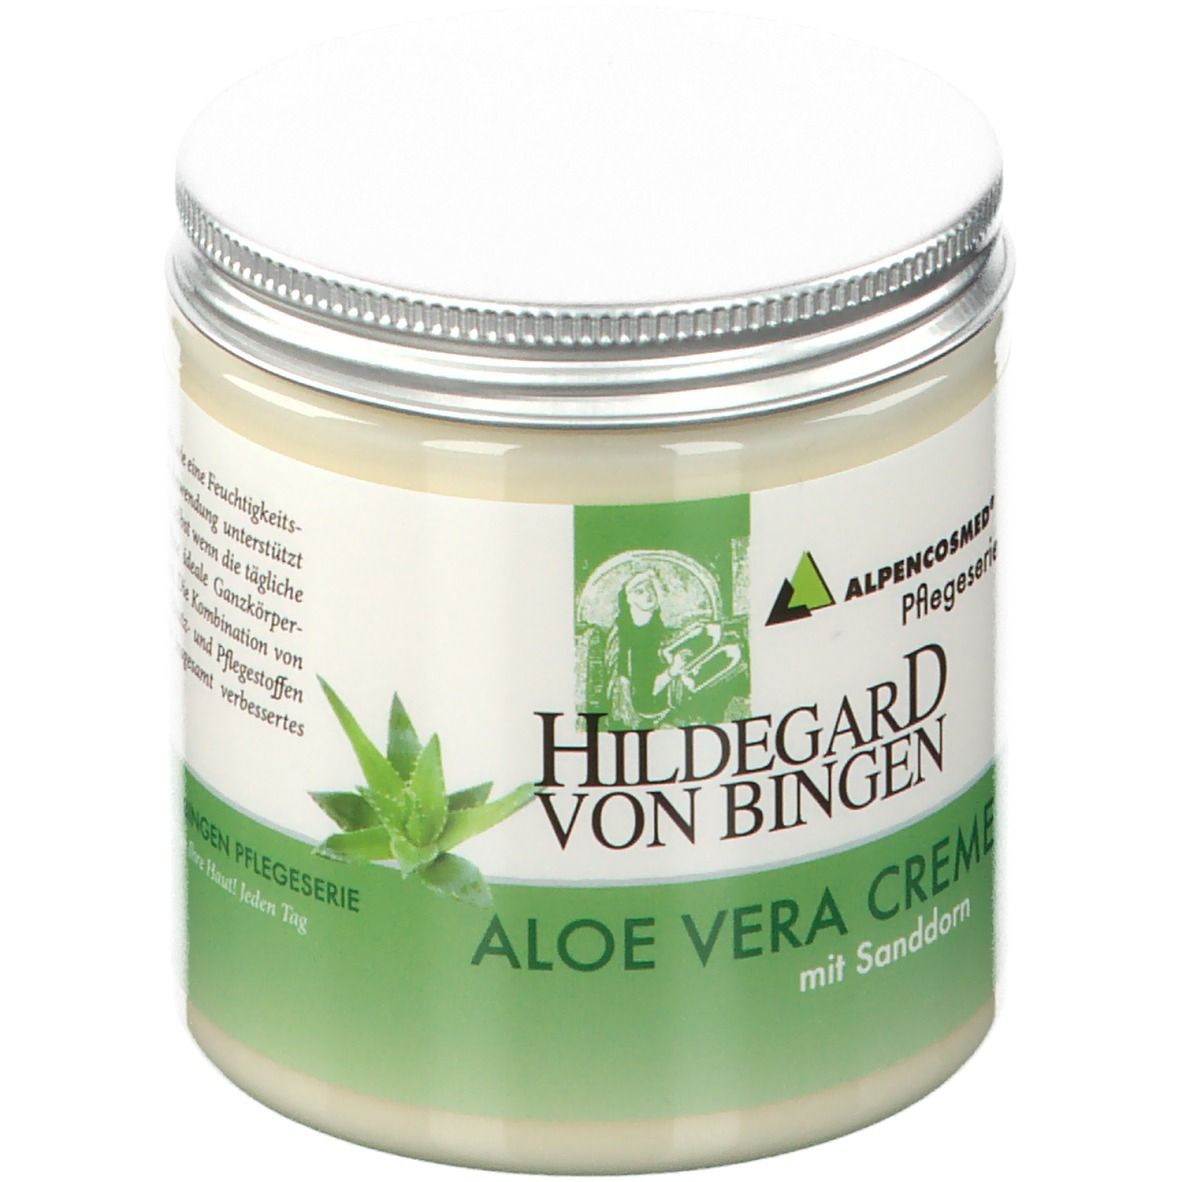 Alpencosmed® Hildegard von Bingen Aloe Vera Creme